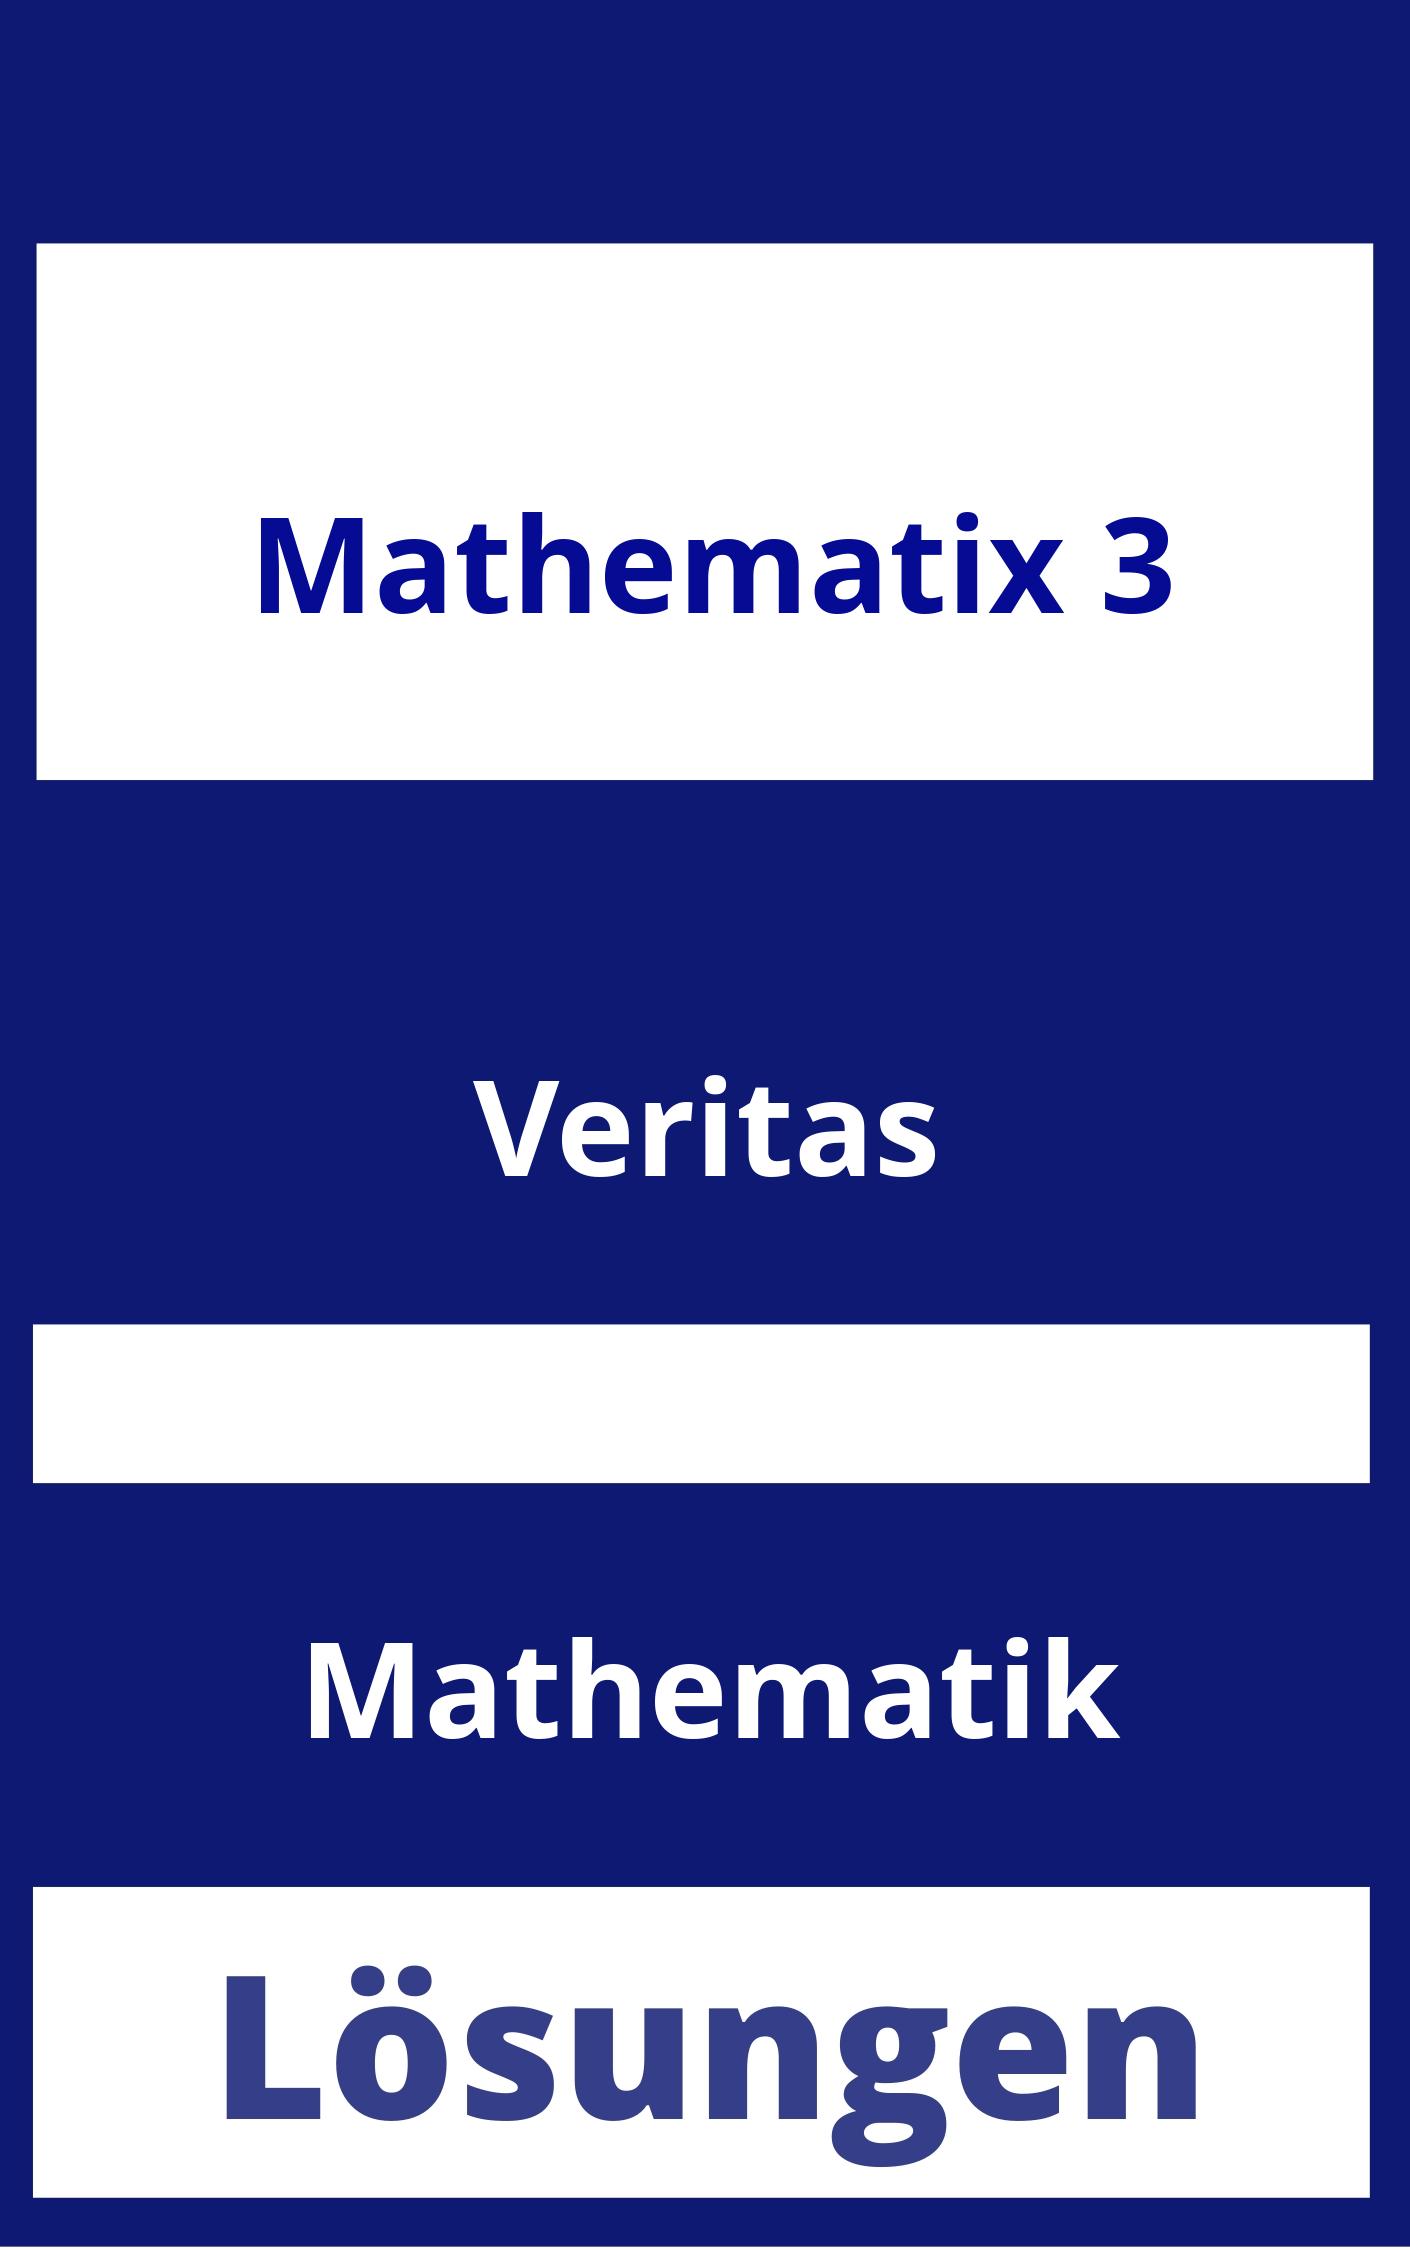 Mathematix 3 Lösungen PDF